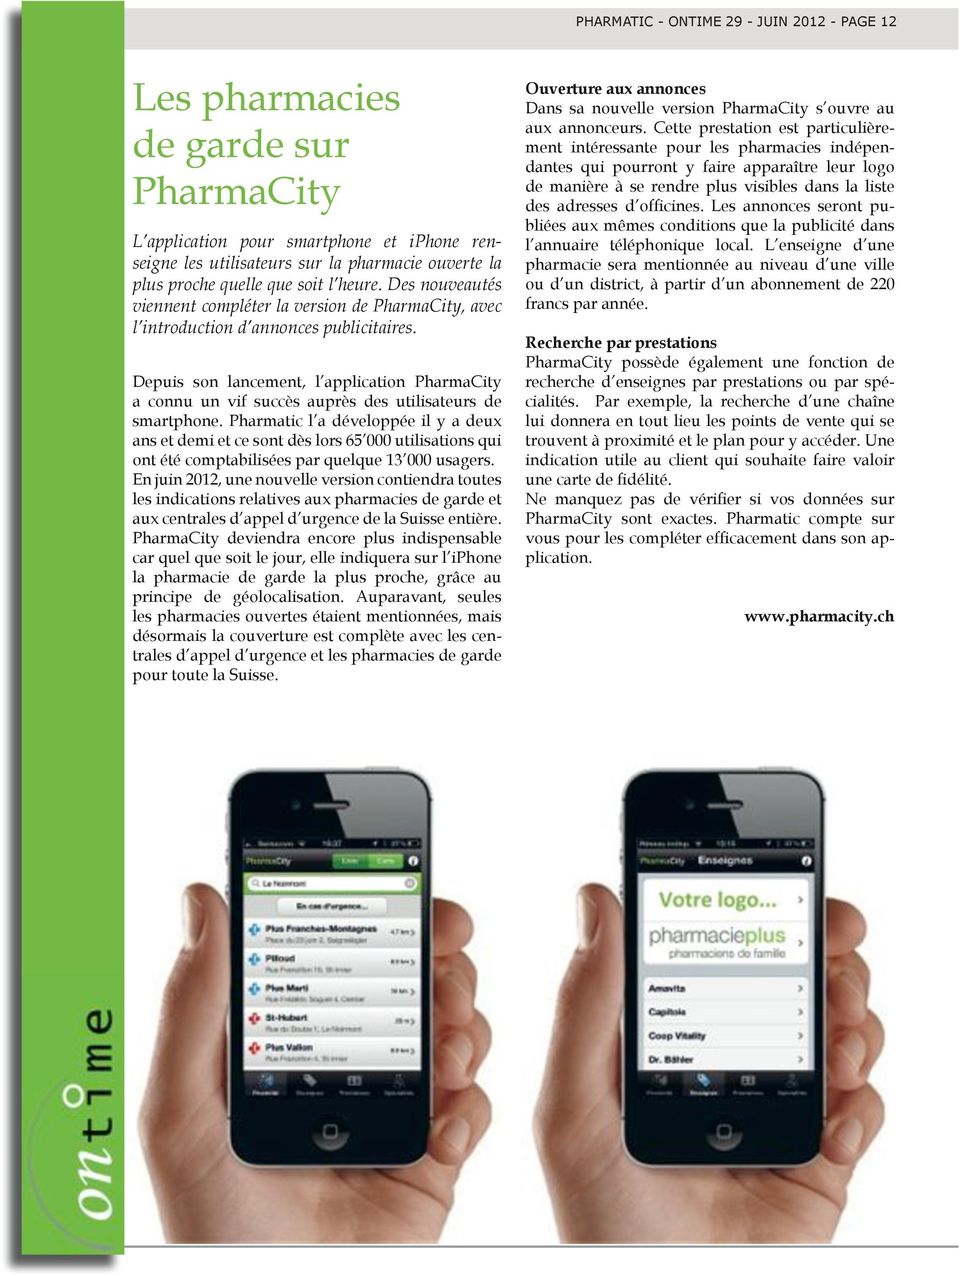 Depuis son lancement, l application PharmaCity a connu un vif succès auprès des utilisateurs de smartphone.